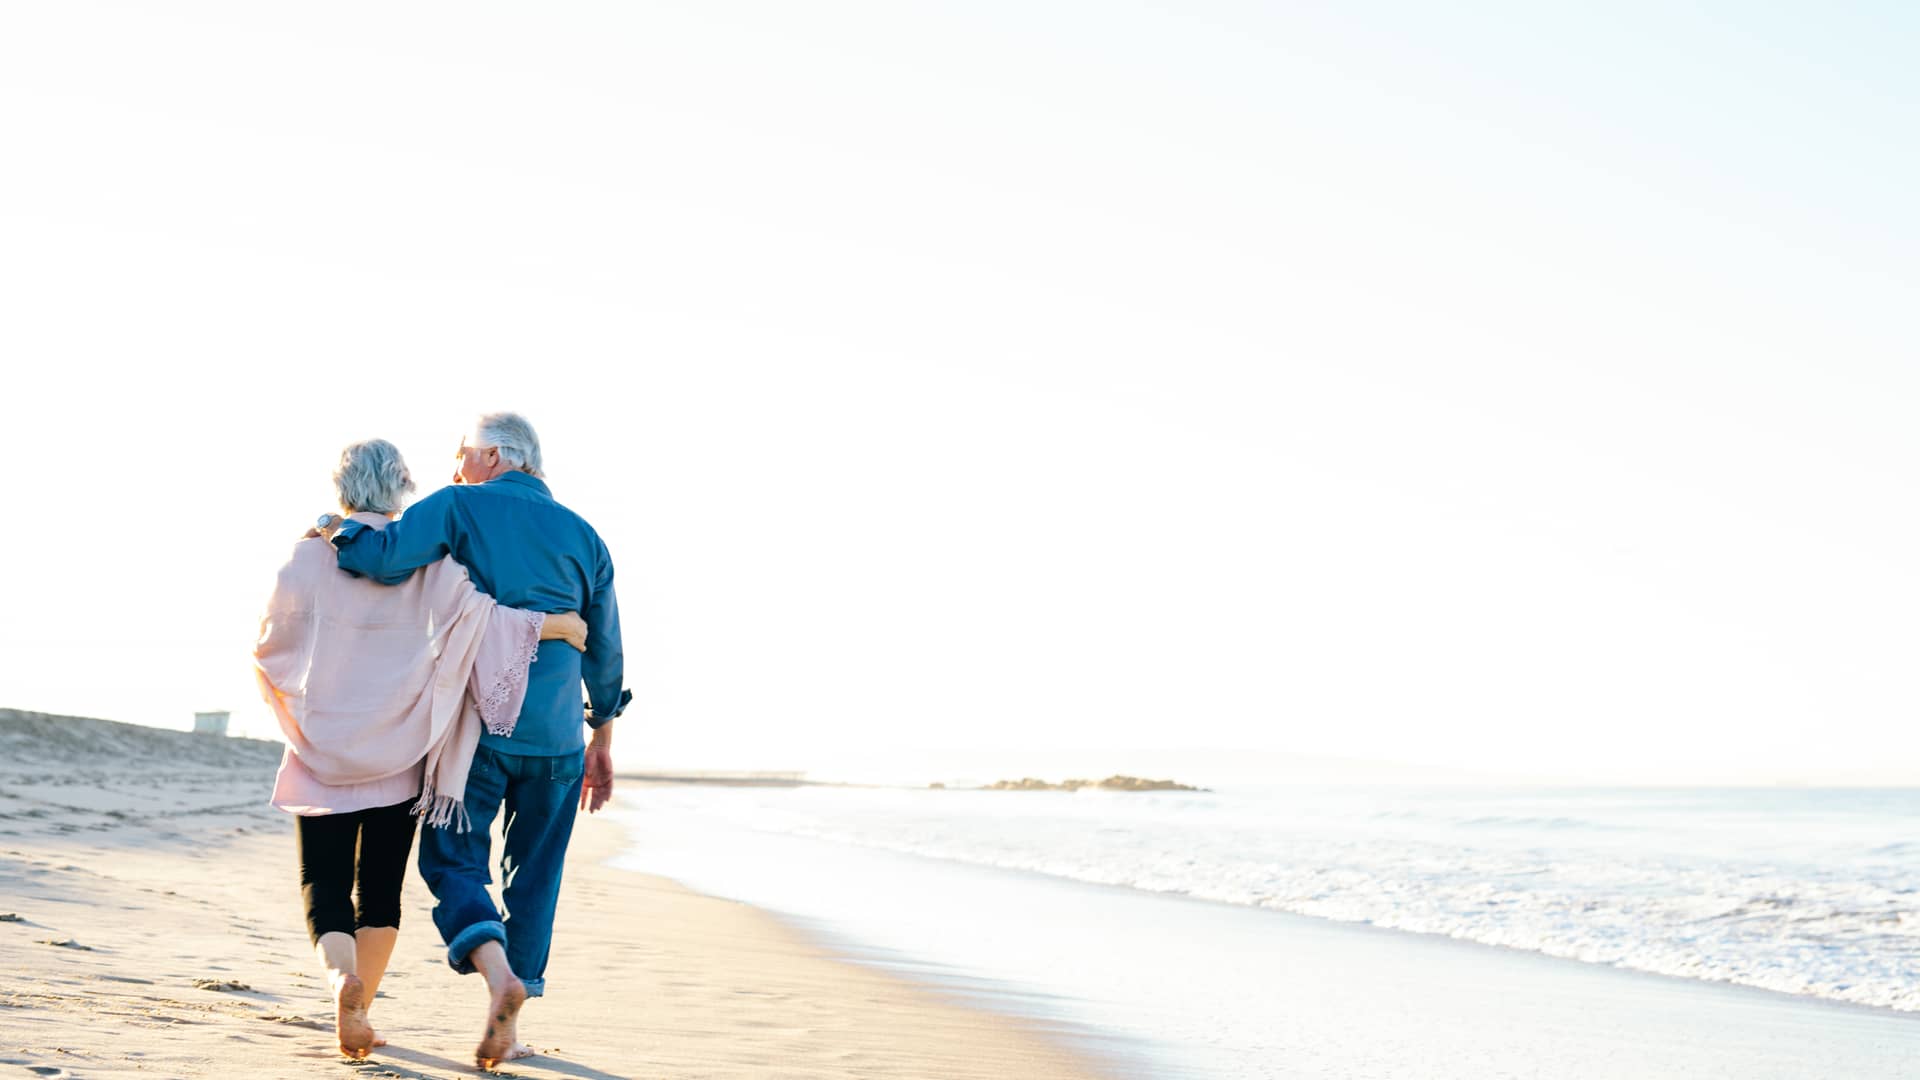 Jubilados de vacaciones disfrutando de paseo por la playa gracias a planes de pensiones deutsche bank